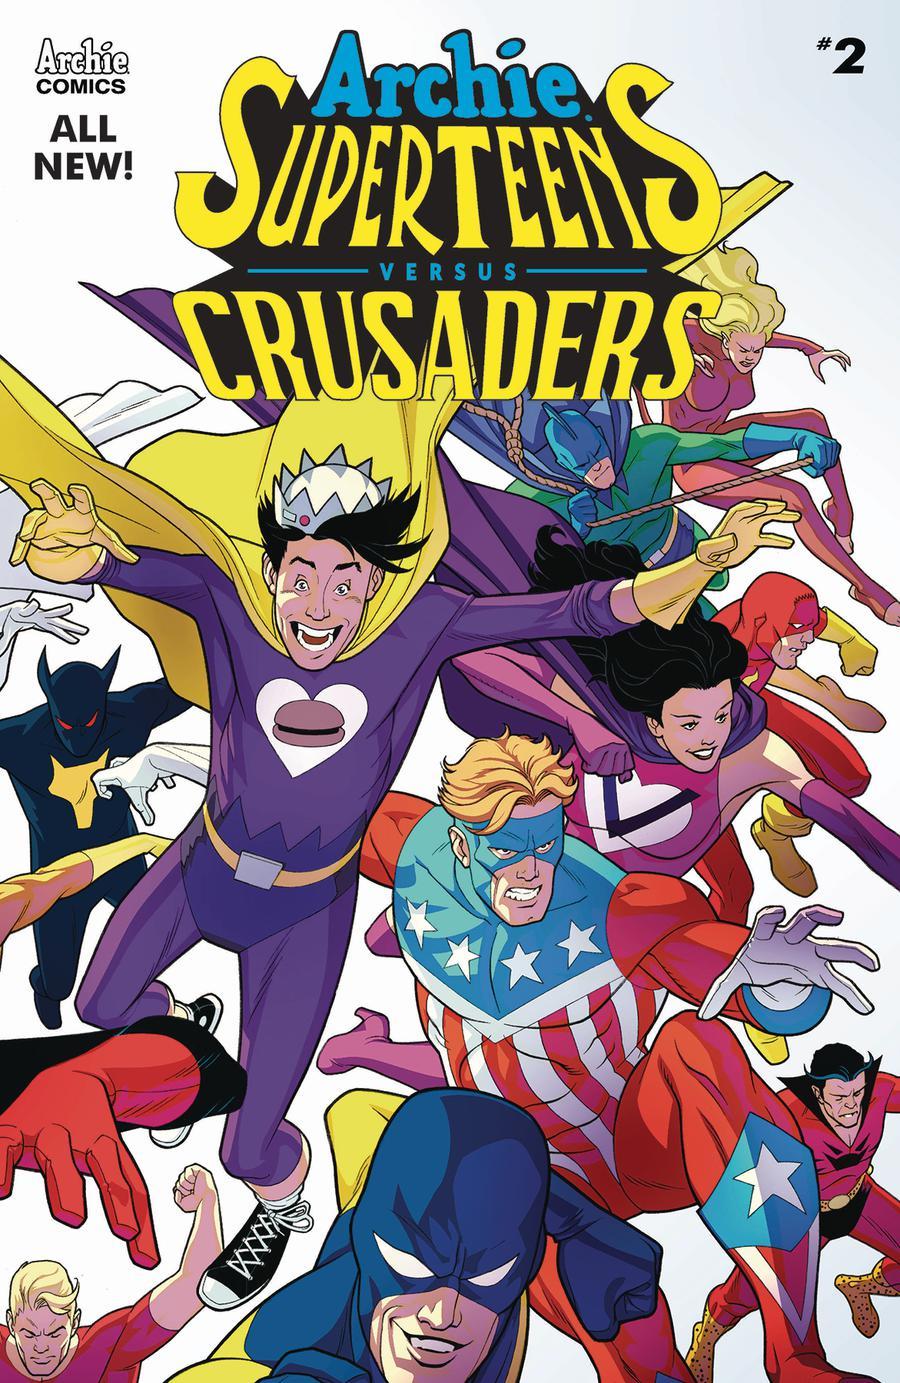 Archie Superteens Versus Crusaders Vol. 1 #2